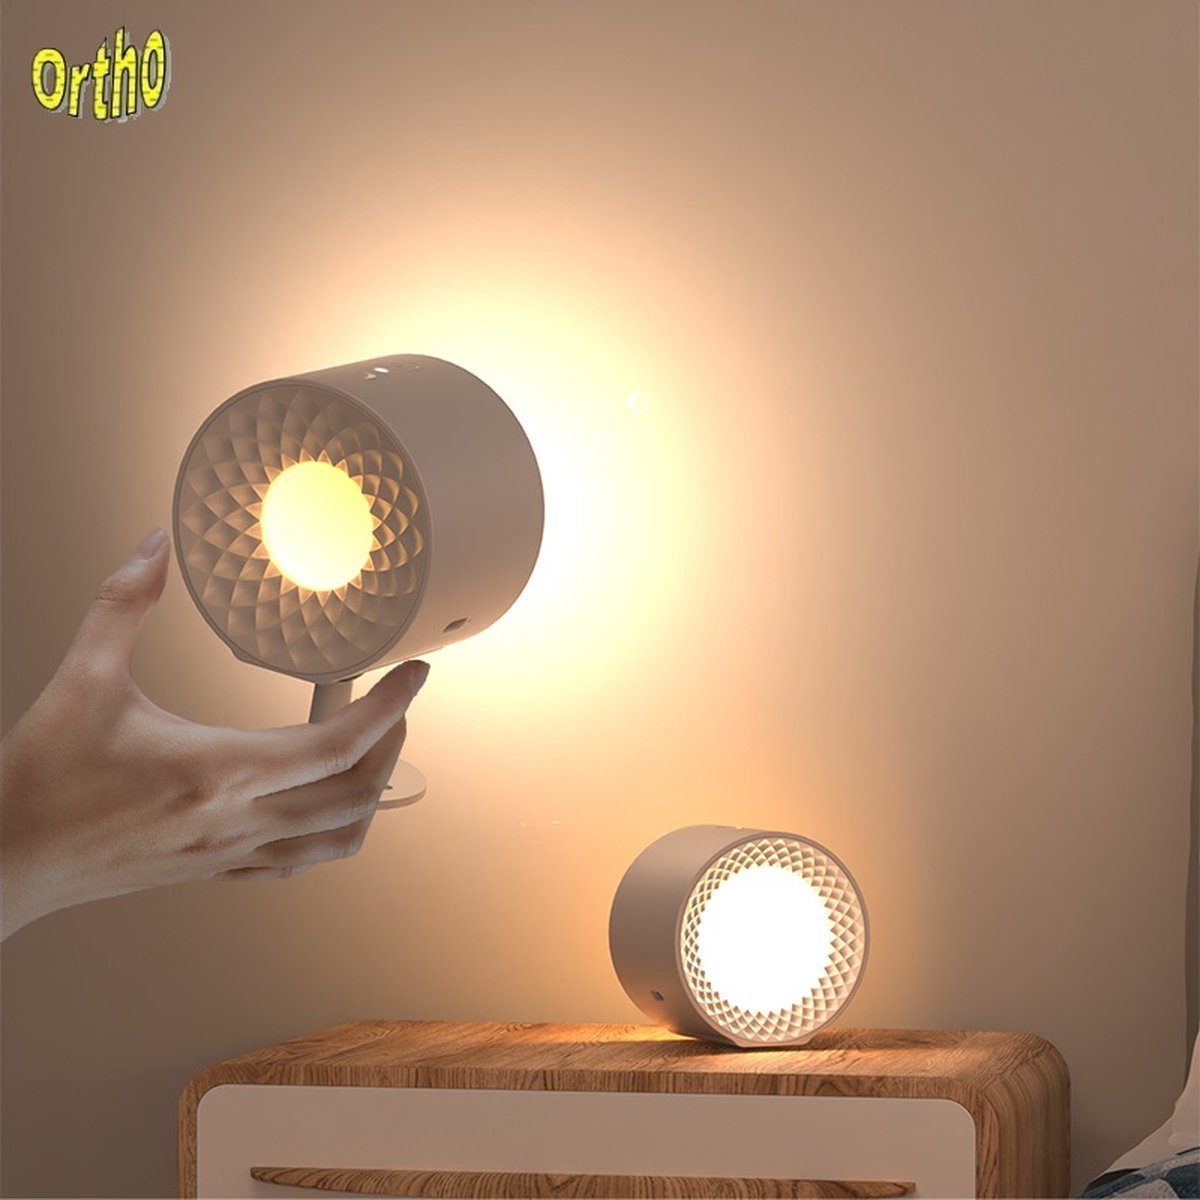 Ortho® - Oplaadbare LED Wandlamp - Nachtlampje - 360° Roterende Magnetische Bal - Timer functie - USB oplaadbaar - Eventueel bevestigen zonder Schroeven - Wit licht - Wit